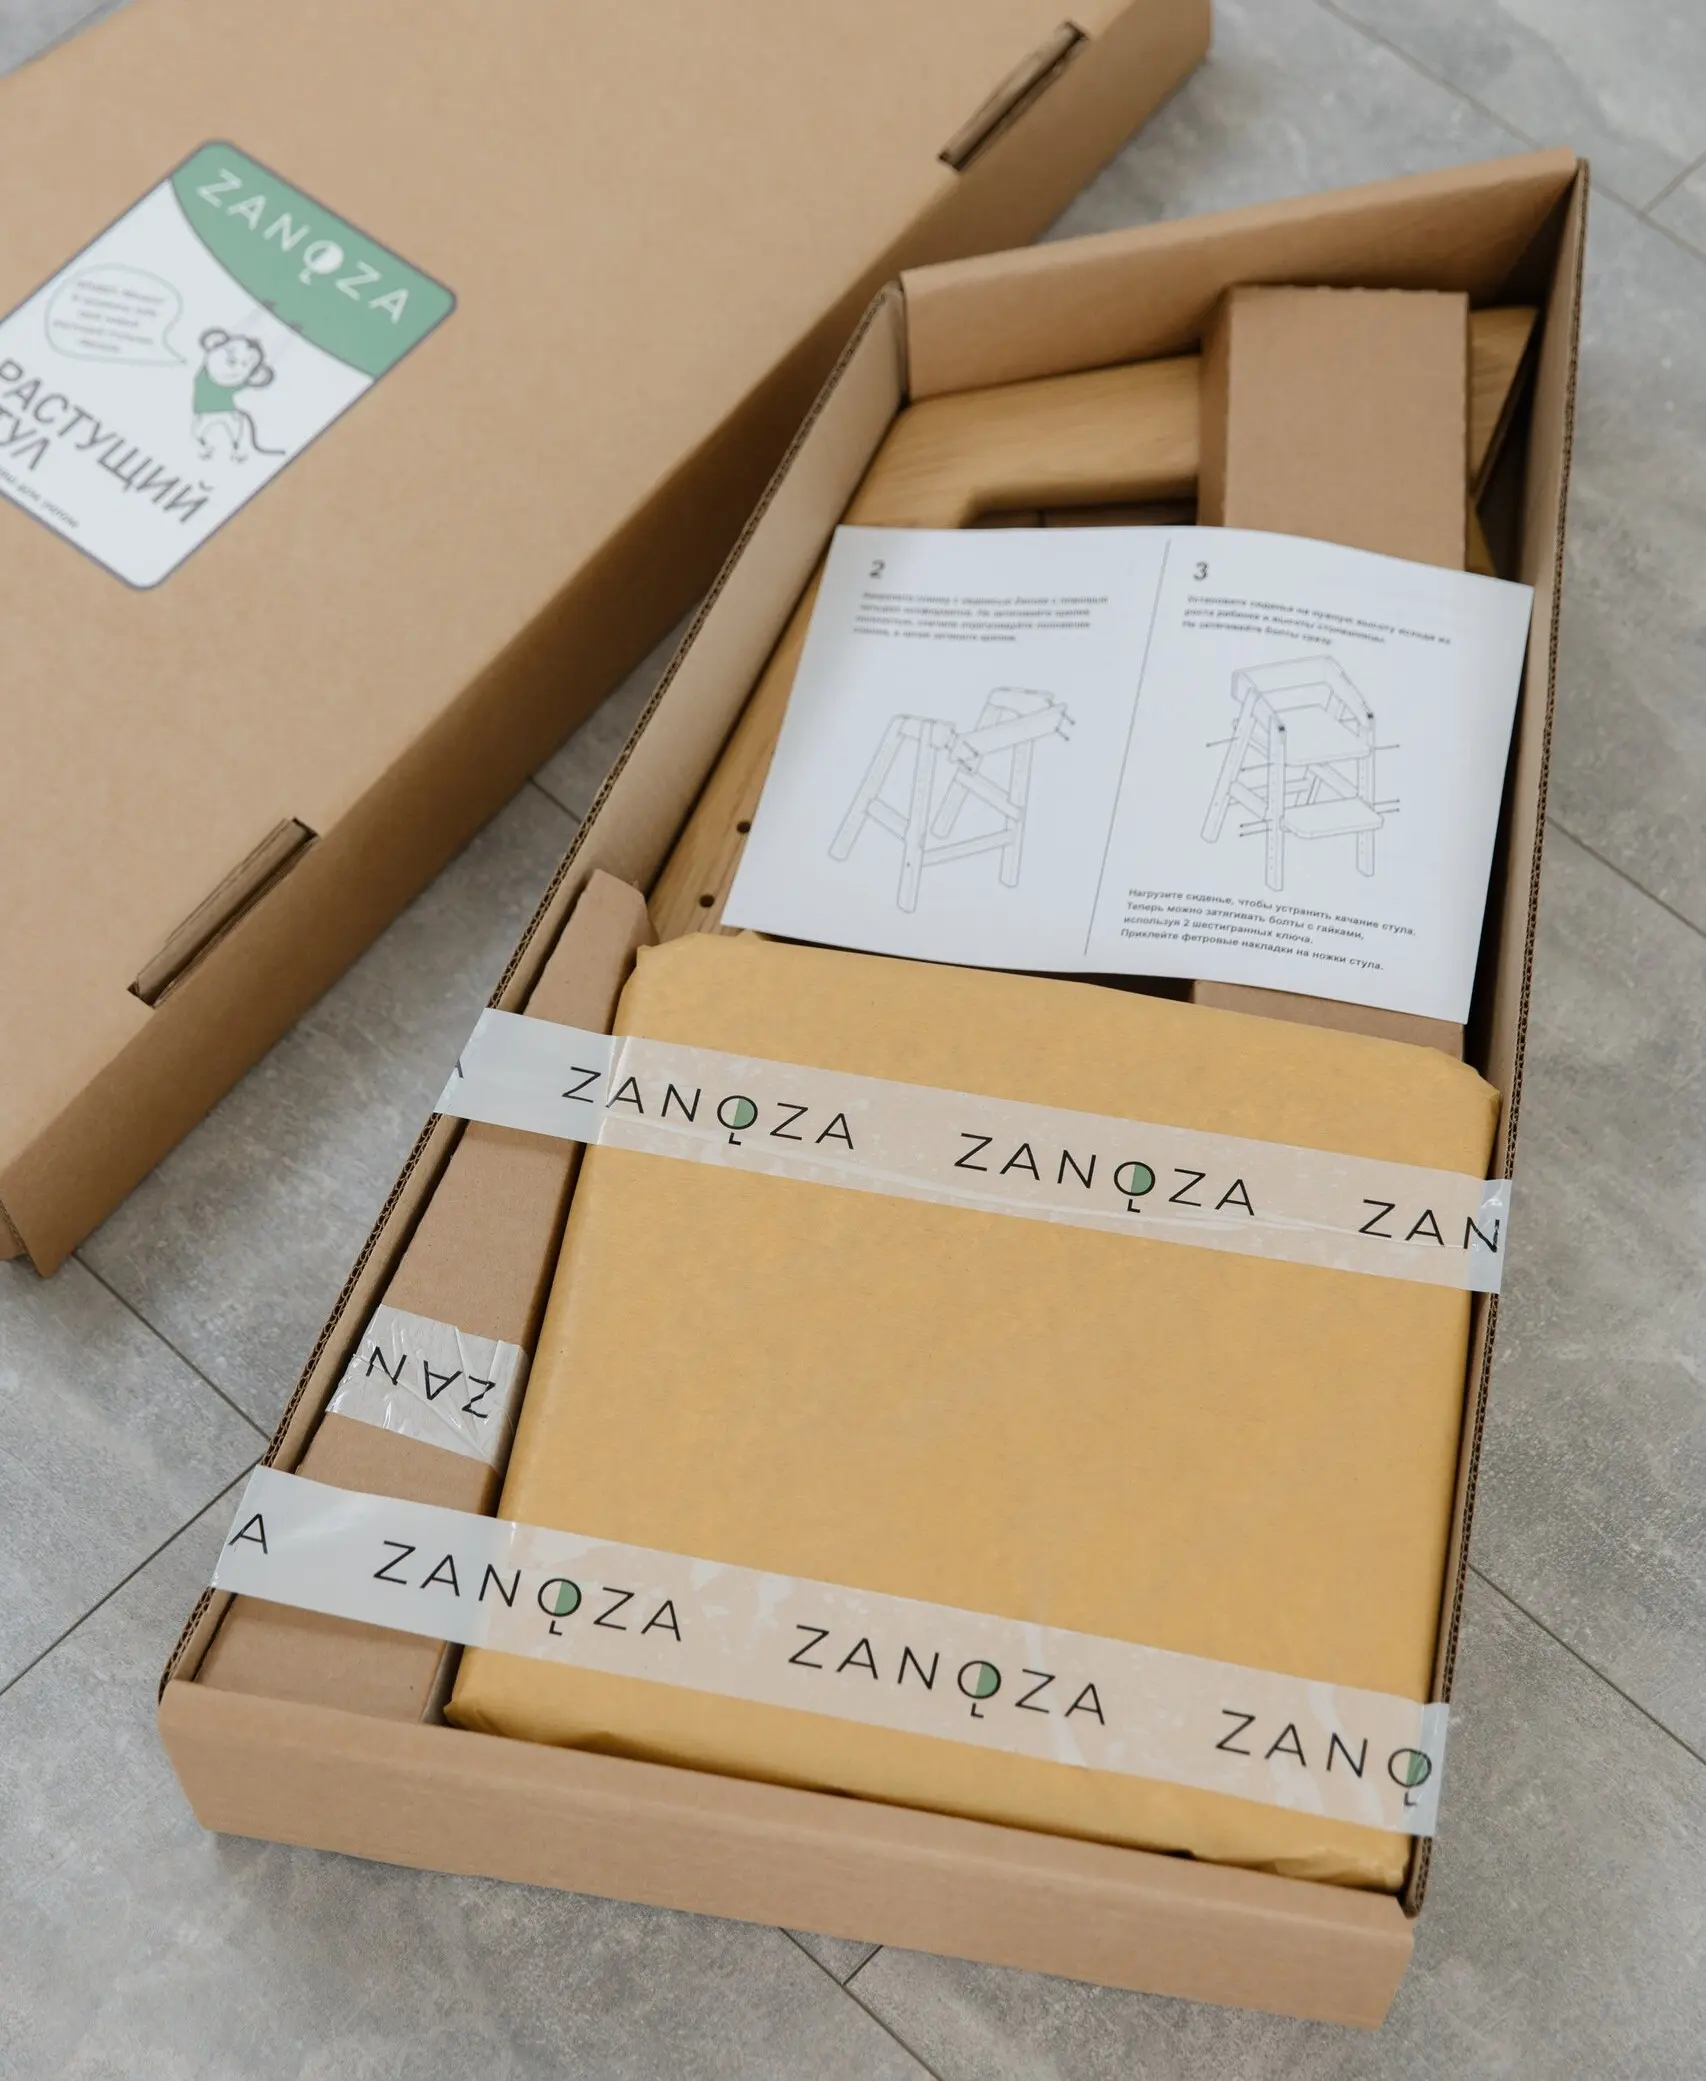 Zanoza семейная столярная мастерская - детская и взрослая мебель из массива дуба